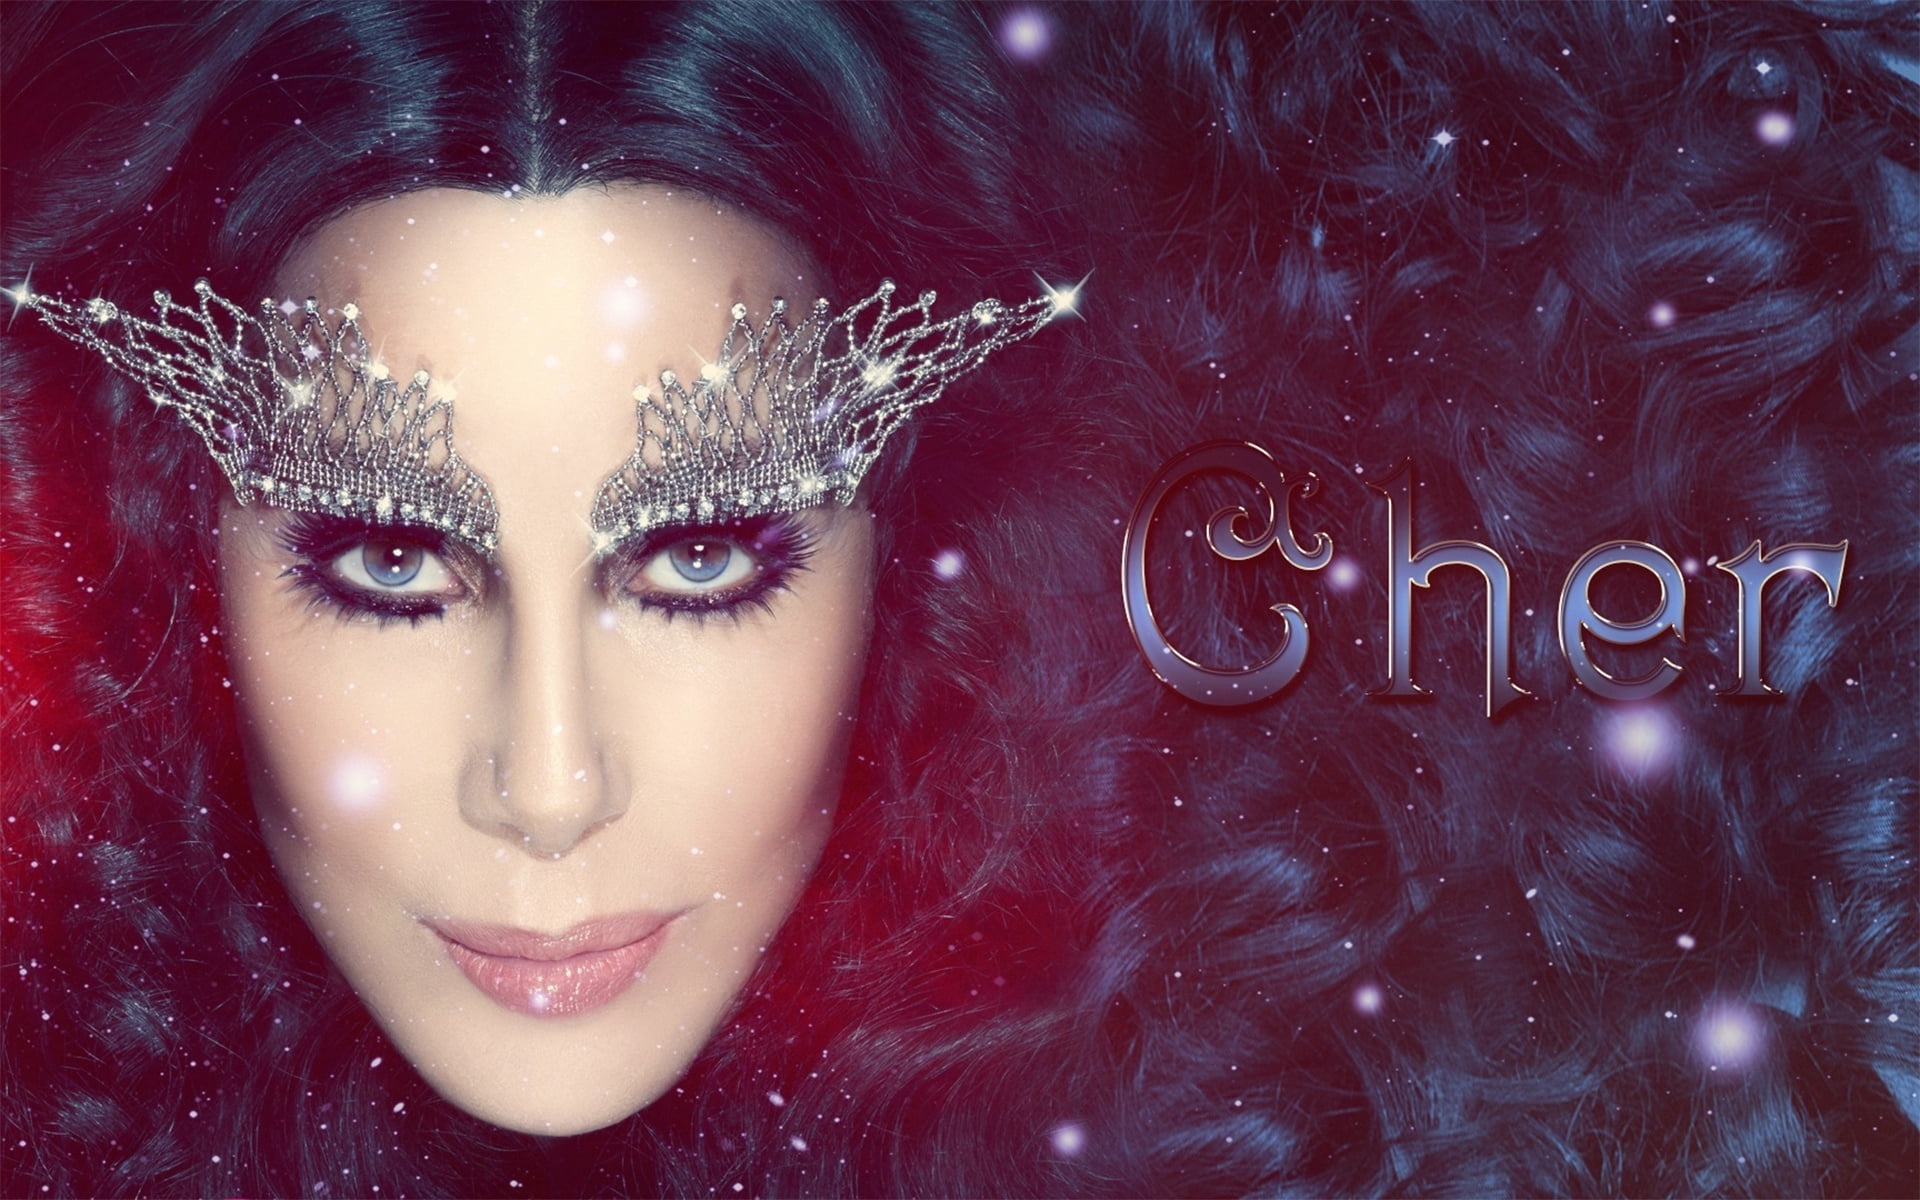 Cher digital wallpaper, singer, makeup, celebrity, women, human Face